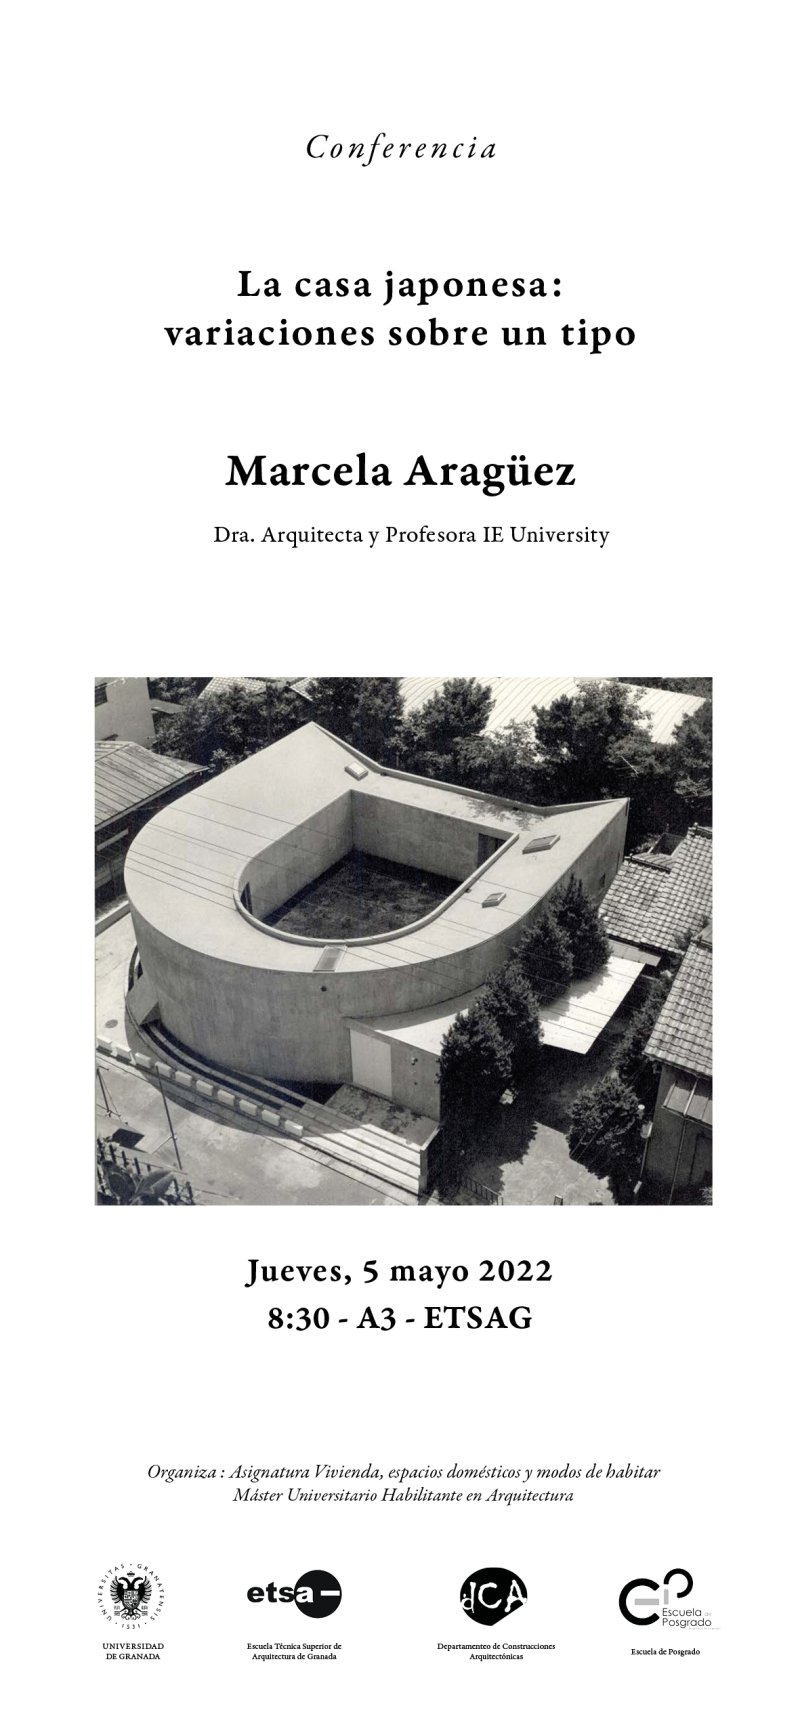 Cartel de la conferencia de Marcela Aragüez